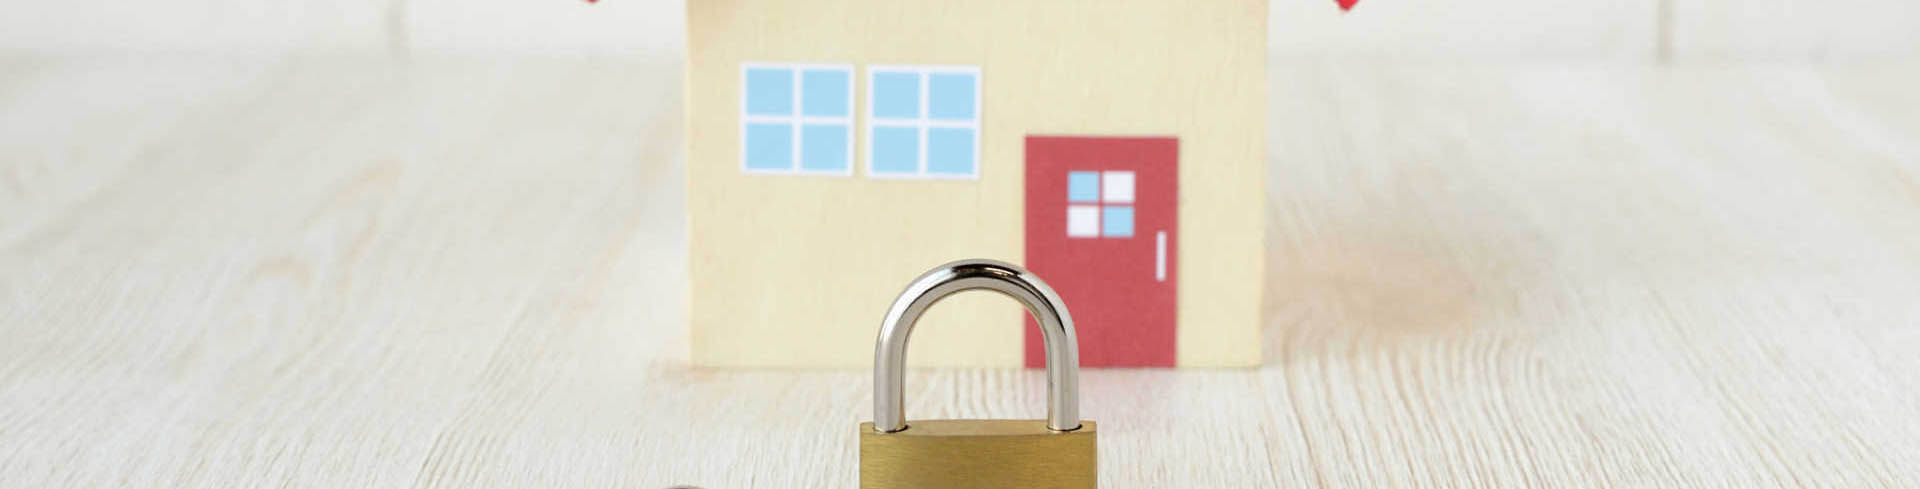 La importancia de escoger un buen seguro de hogar al construir una vivienda: ¡protege tu inversión! - CMYK Arquitectos